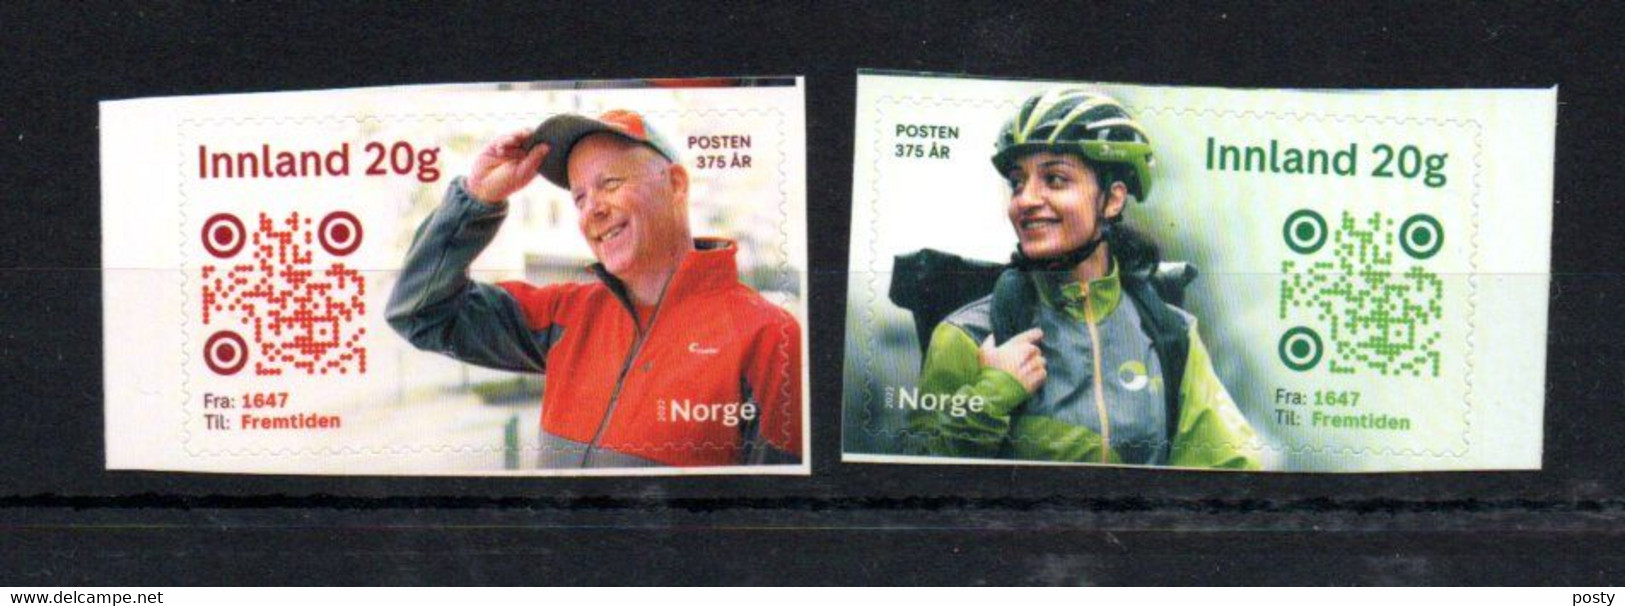 NORVEGE - NORWAY - 2022 - FACTEUR - MAILMAN - 375éme ANNIVERSAIRE - 375th ANNIVERSARY - - Neufs